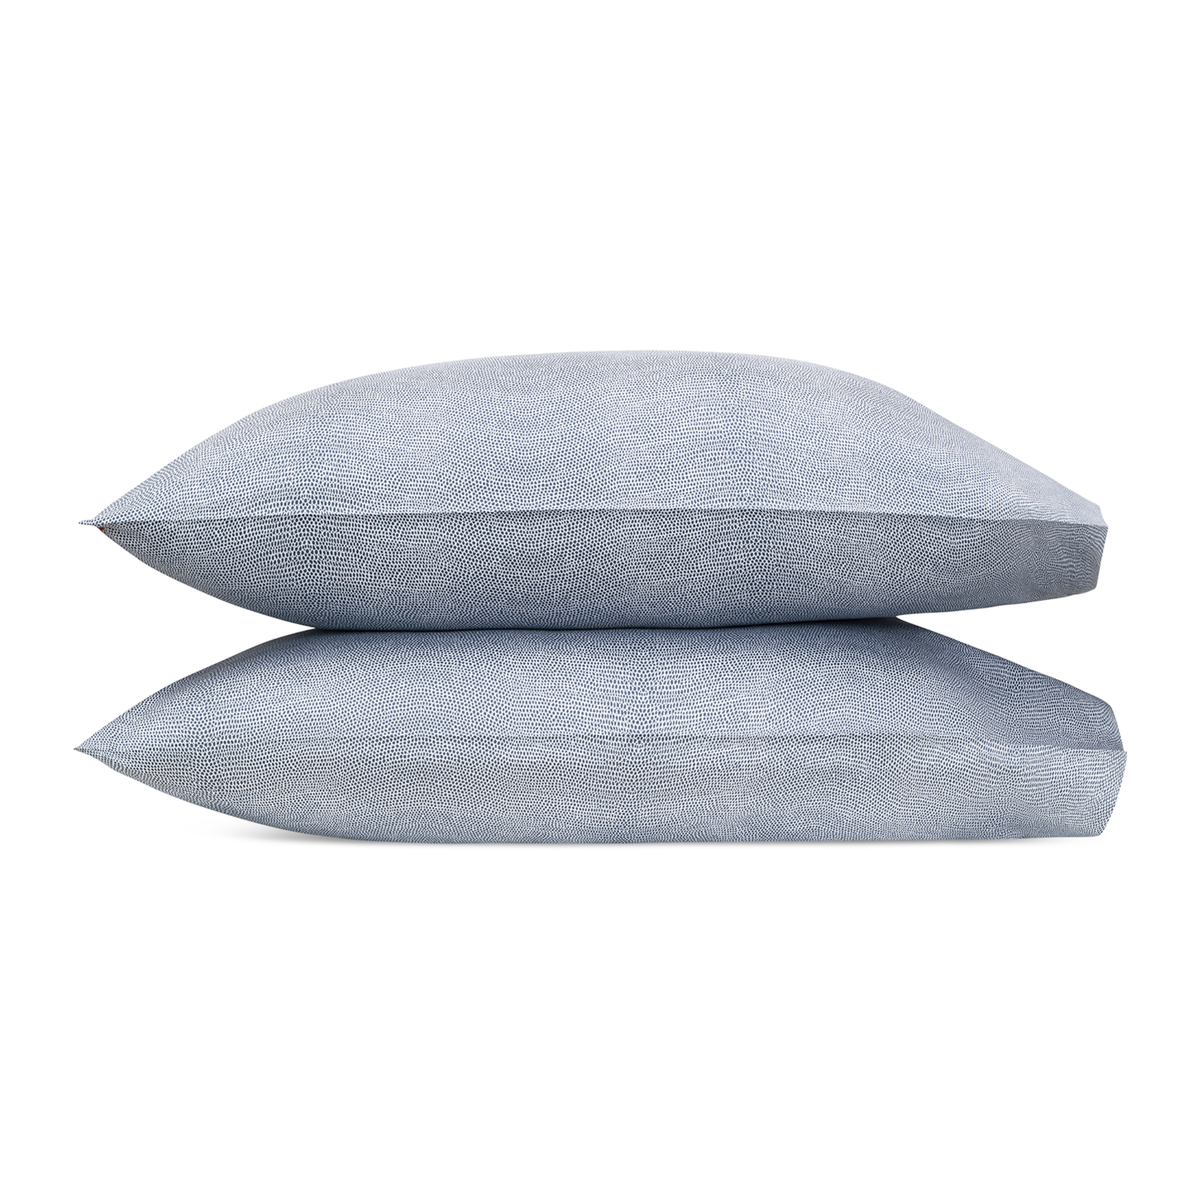 Pair of Pillowcases of Steel Blue Matouk Jasper Bedding